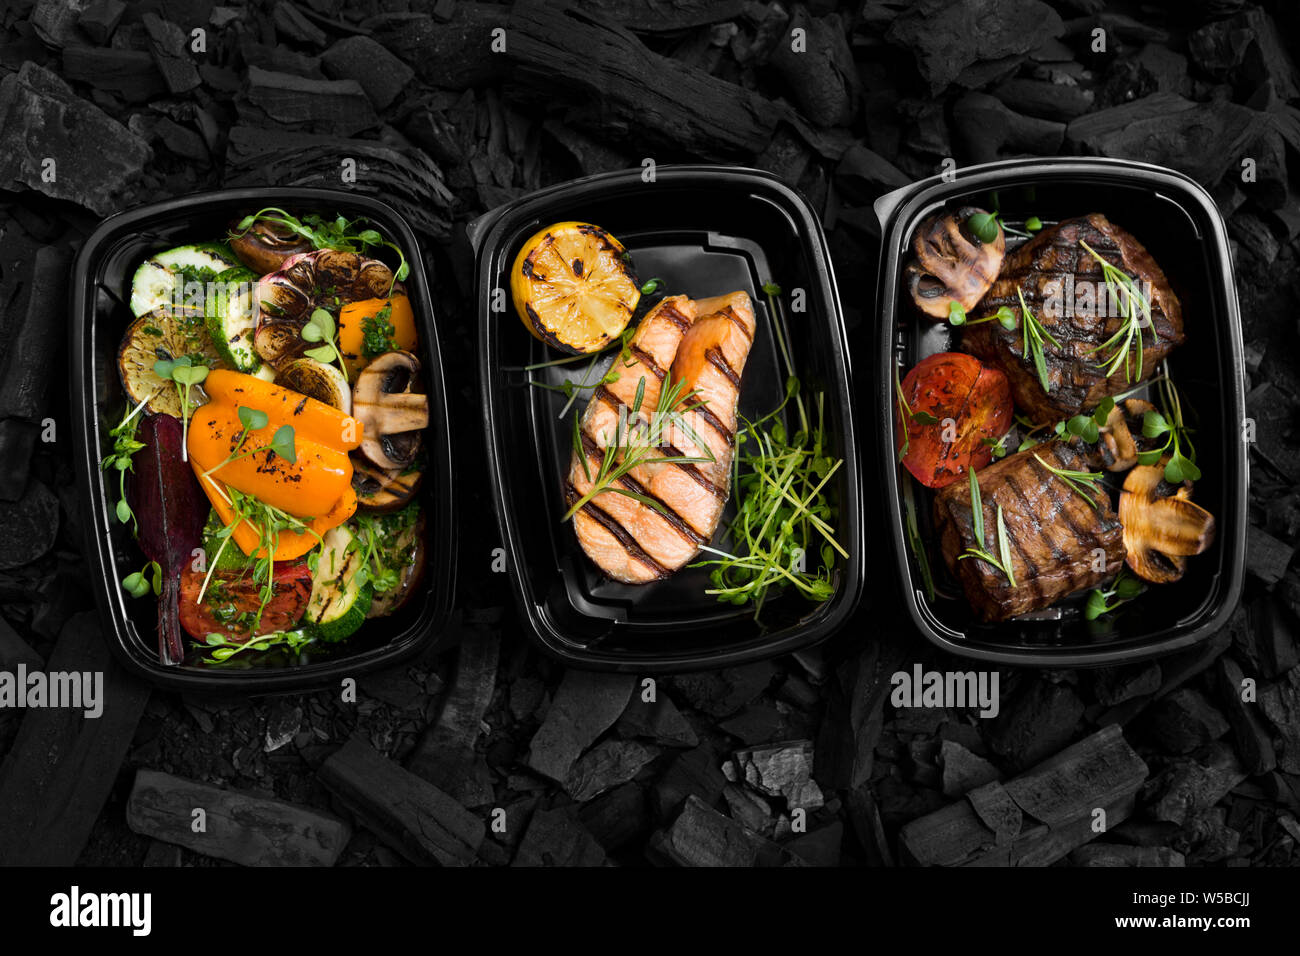 Restaurant grillades nourriture dans des boîtes à emporter pour chaque personne Banque D'Images